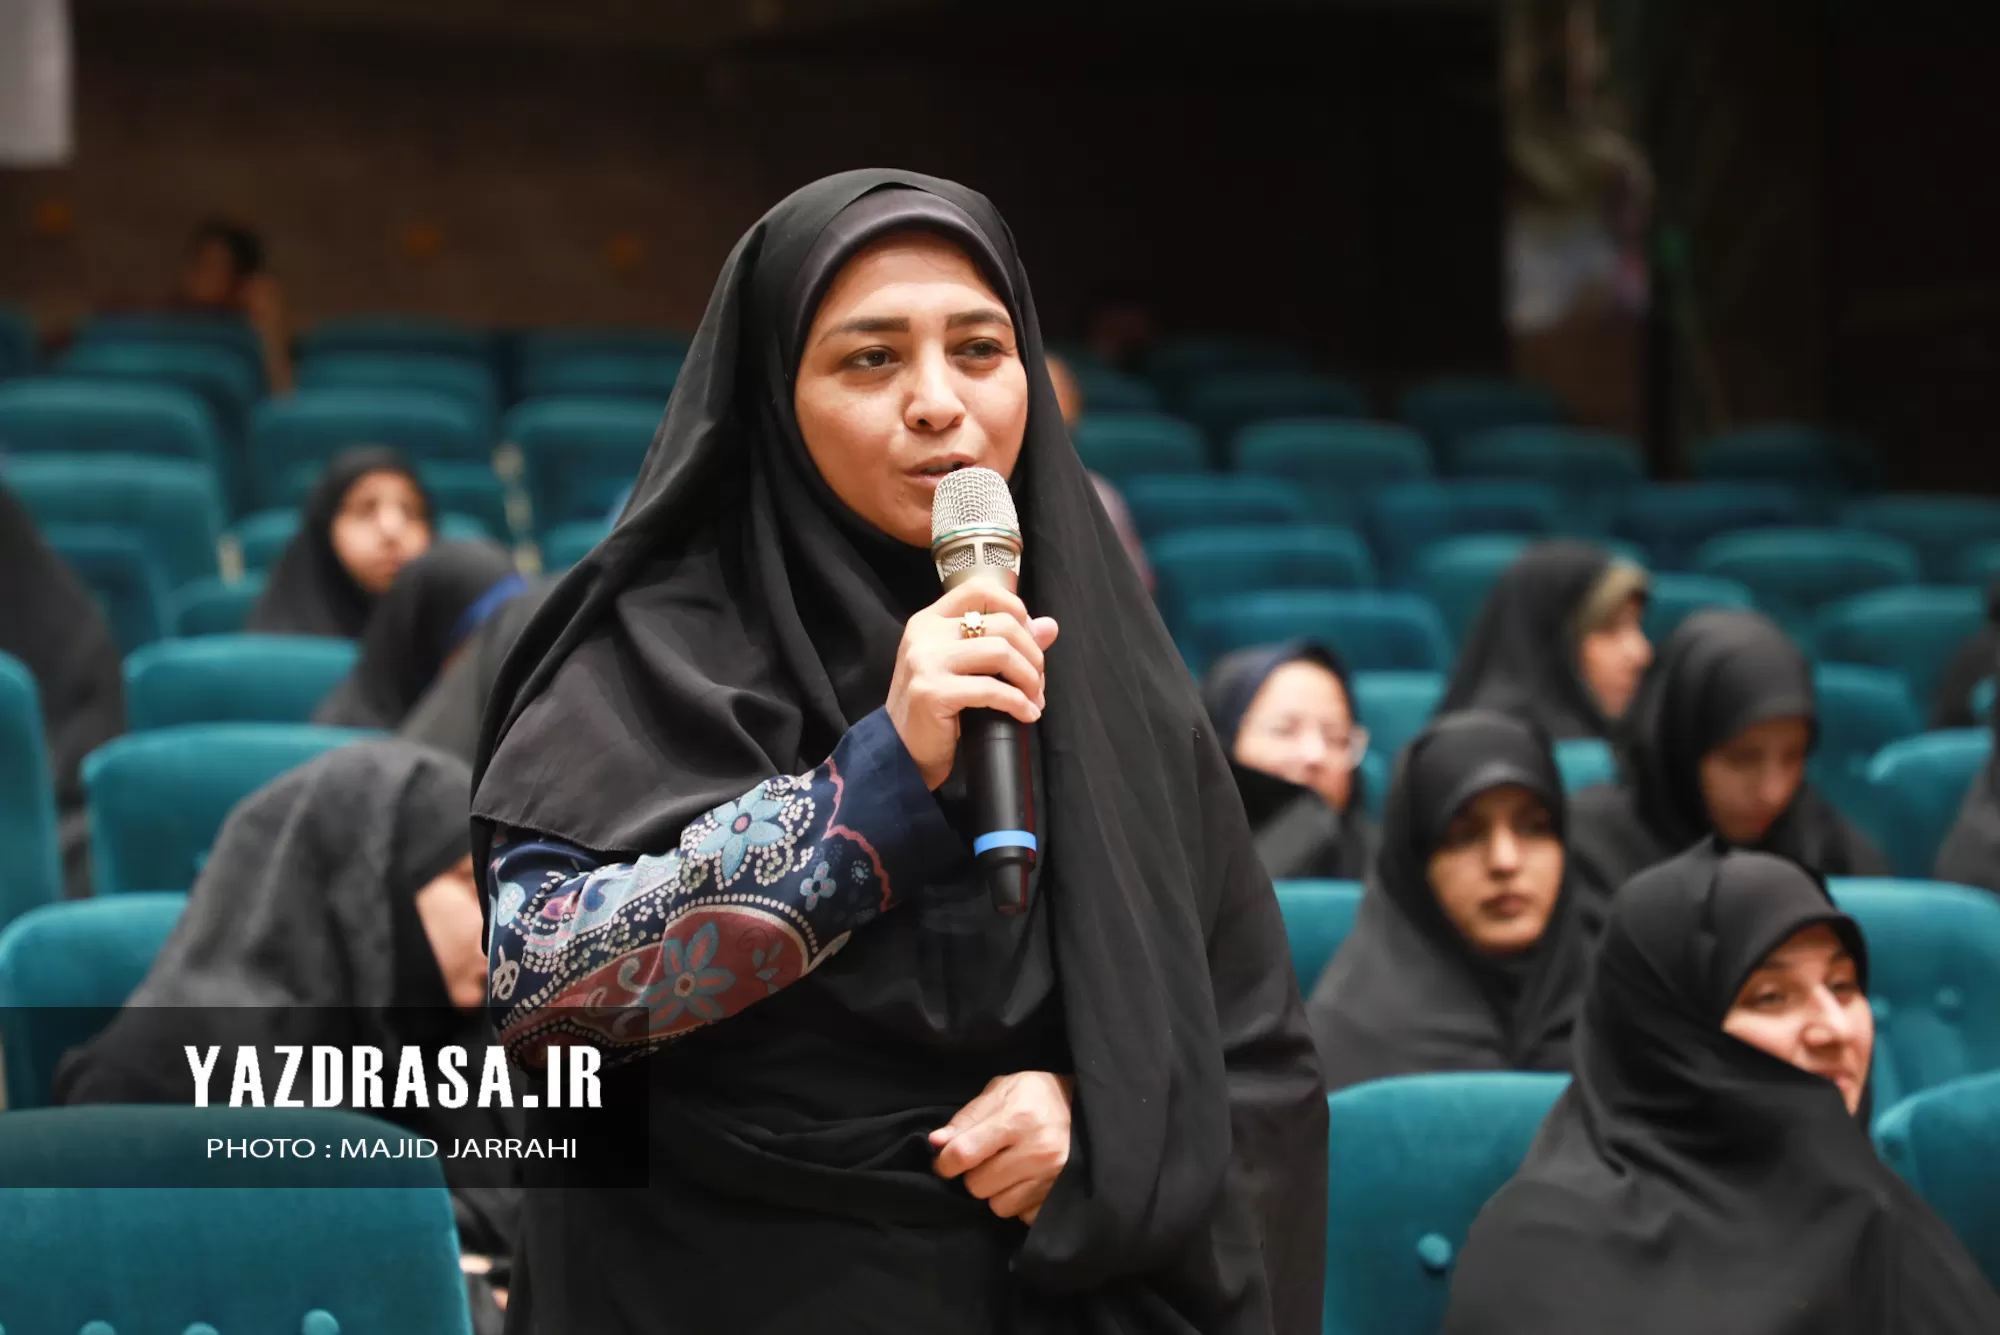 دیدار معلمان و فرهنگیان یزد با سردار نقدی